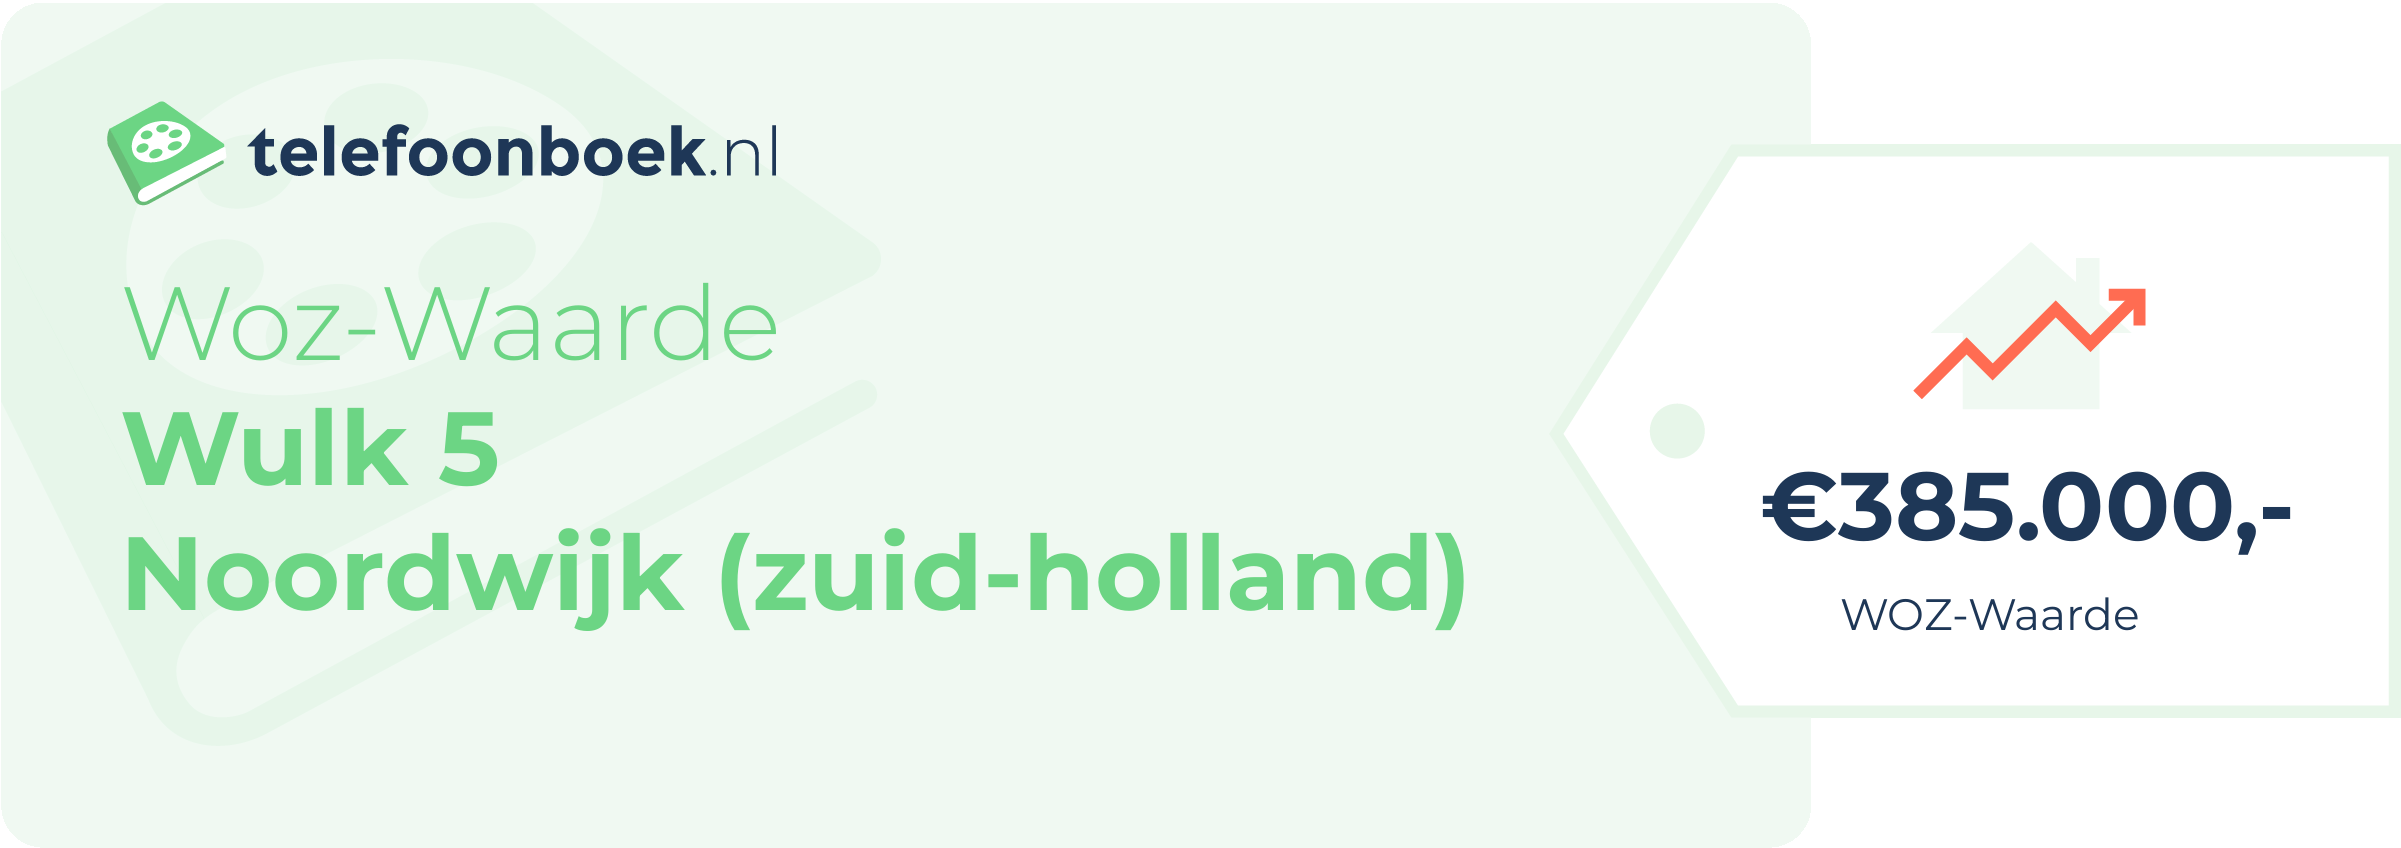 WOZ-waarde Wulk 5 Noordwijk (Zuid-Holland)